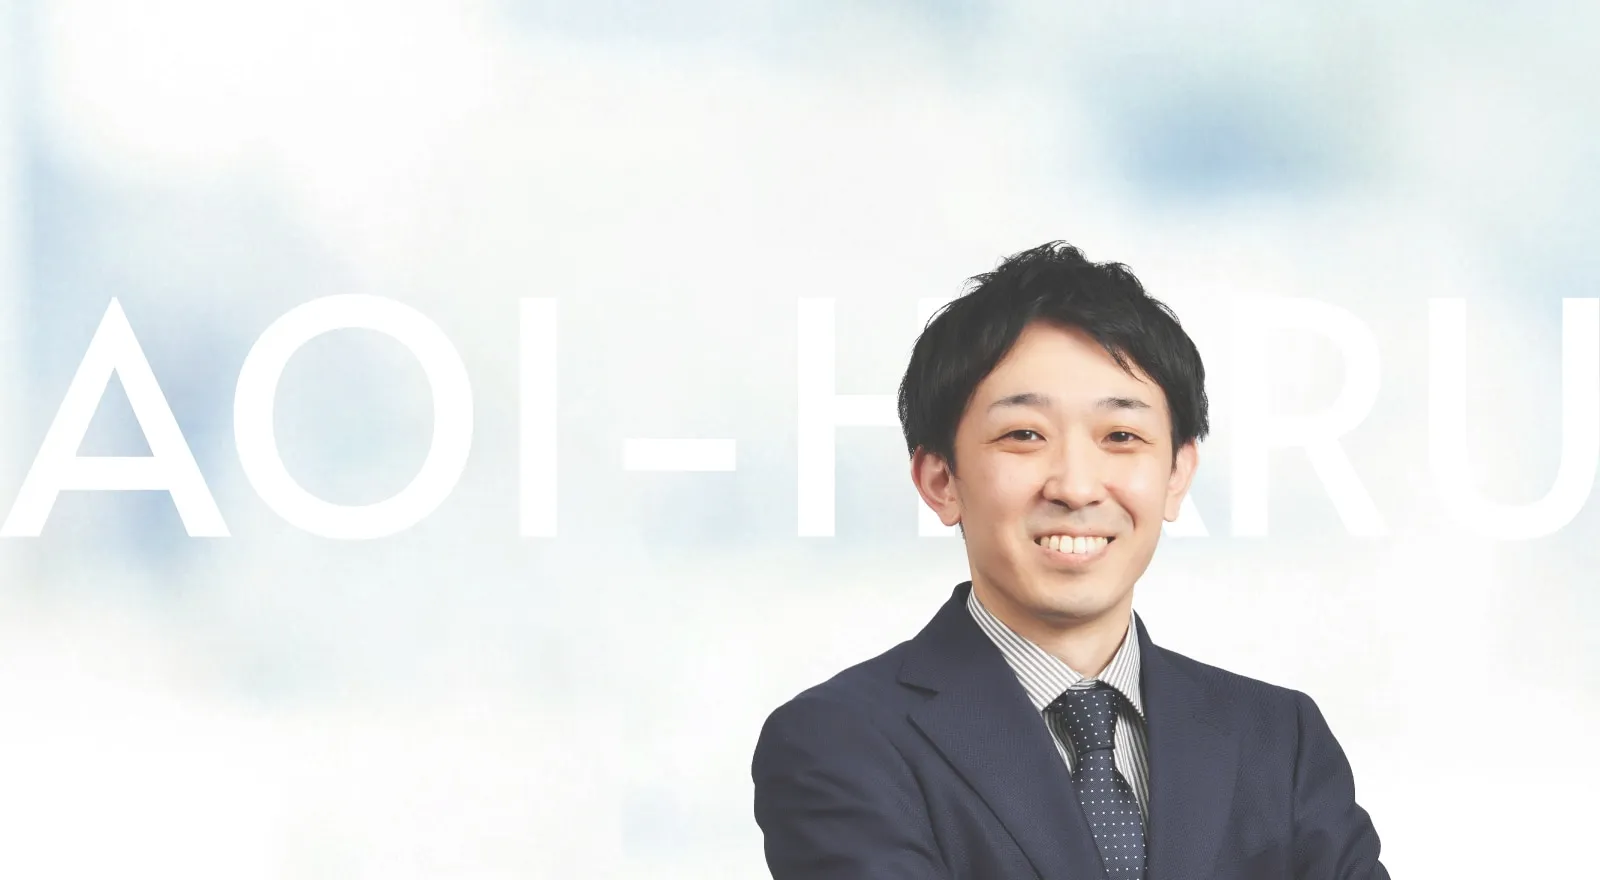 株式会社アオイハル 代表取締役 KHOJIRO SUGIHARA / 杉原 浩二郎